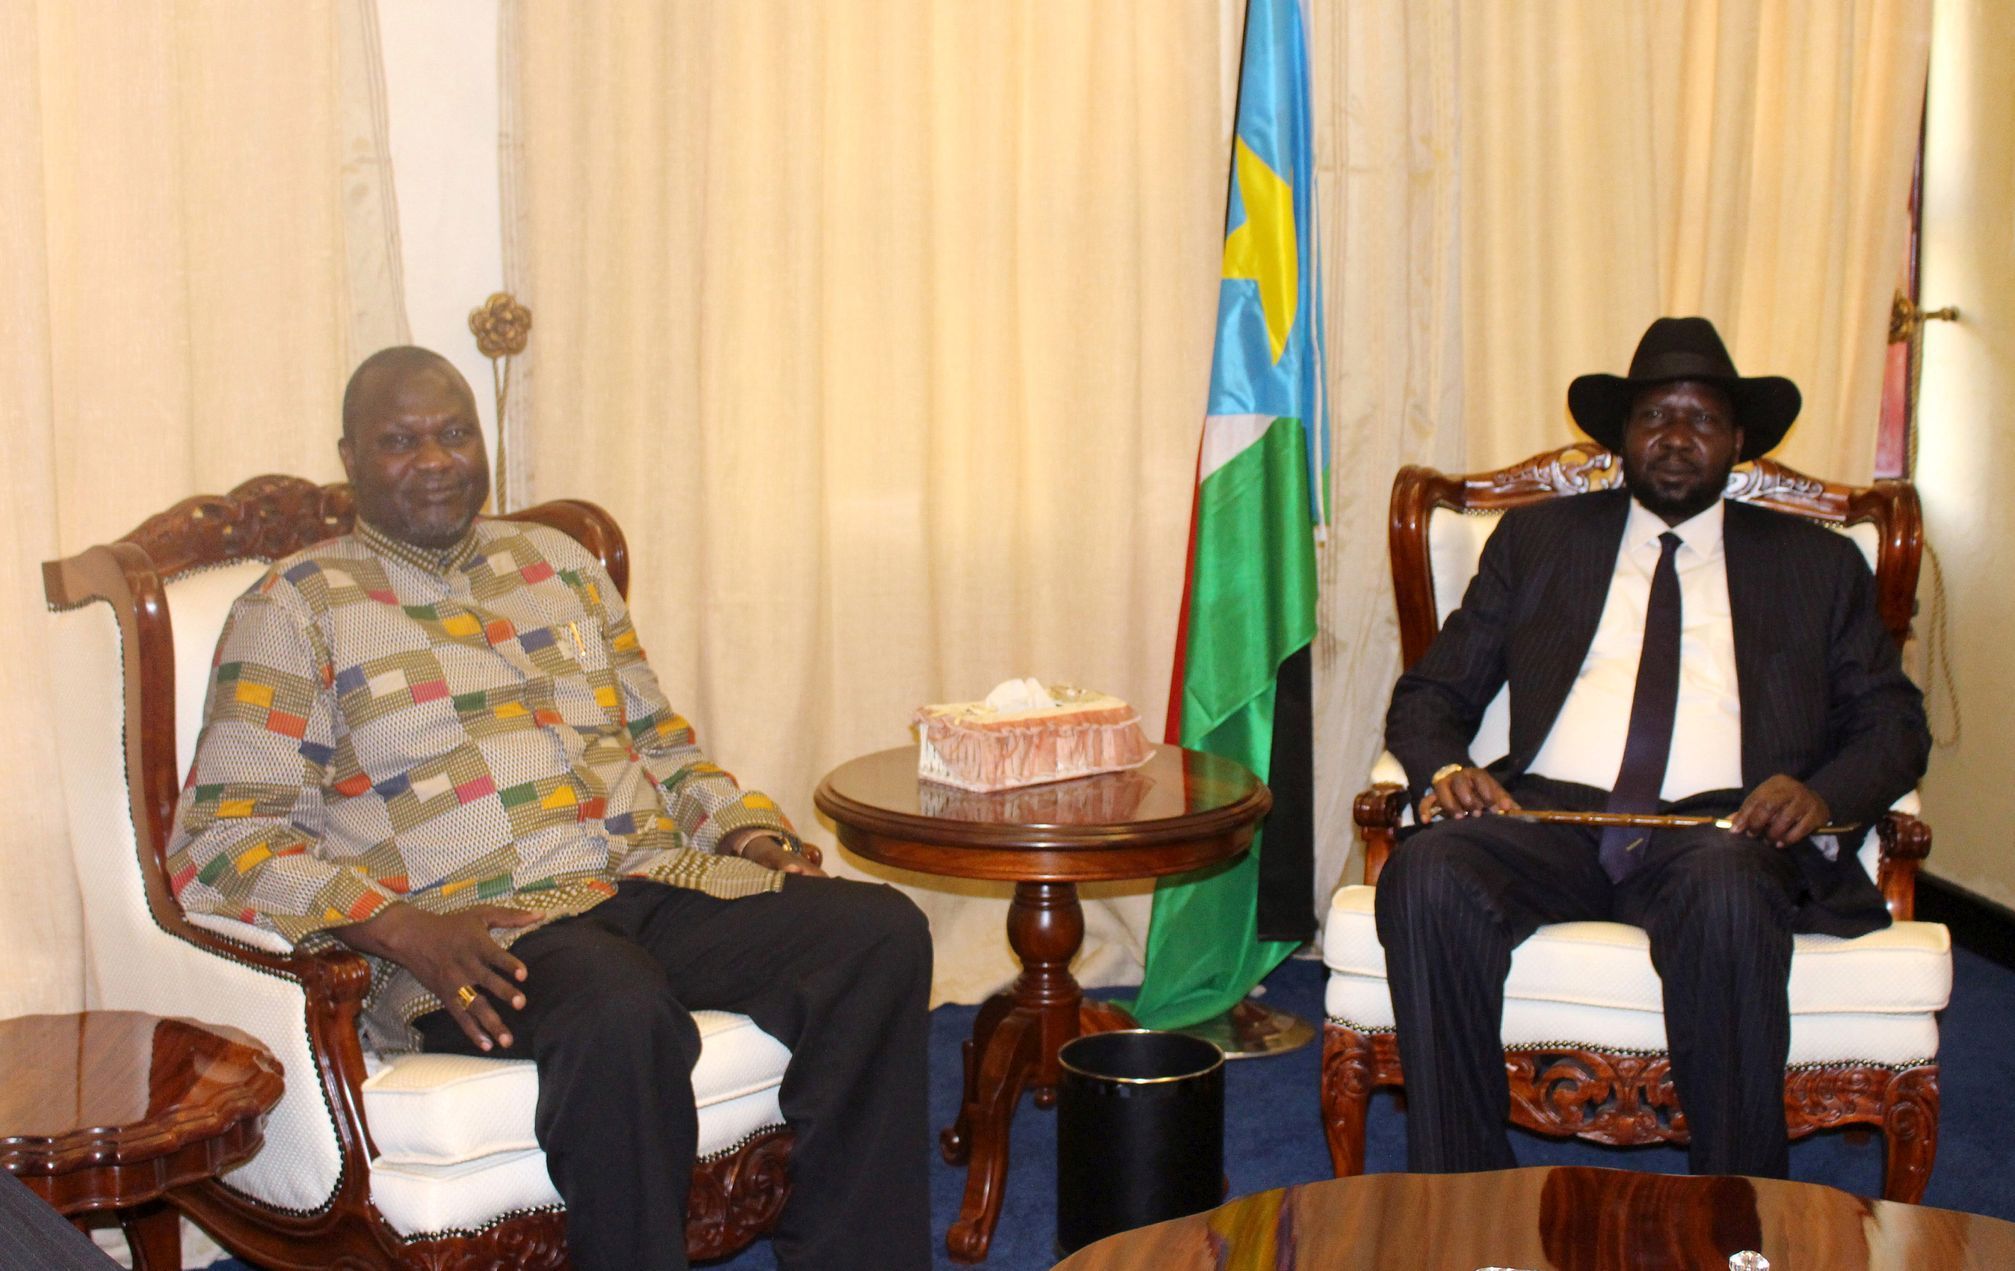 prezident Kiir, a nekdješí víceprezident Machar